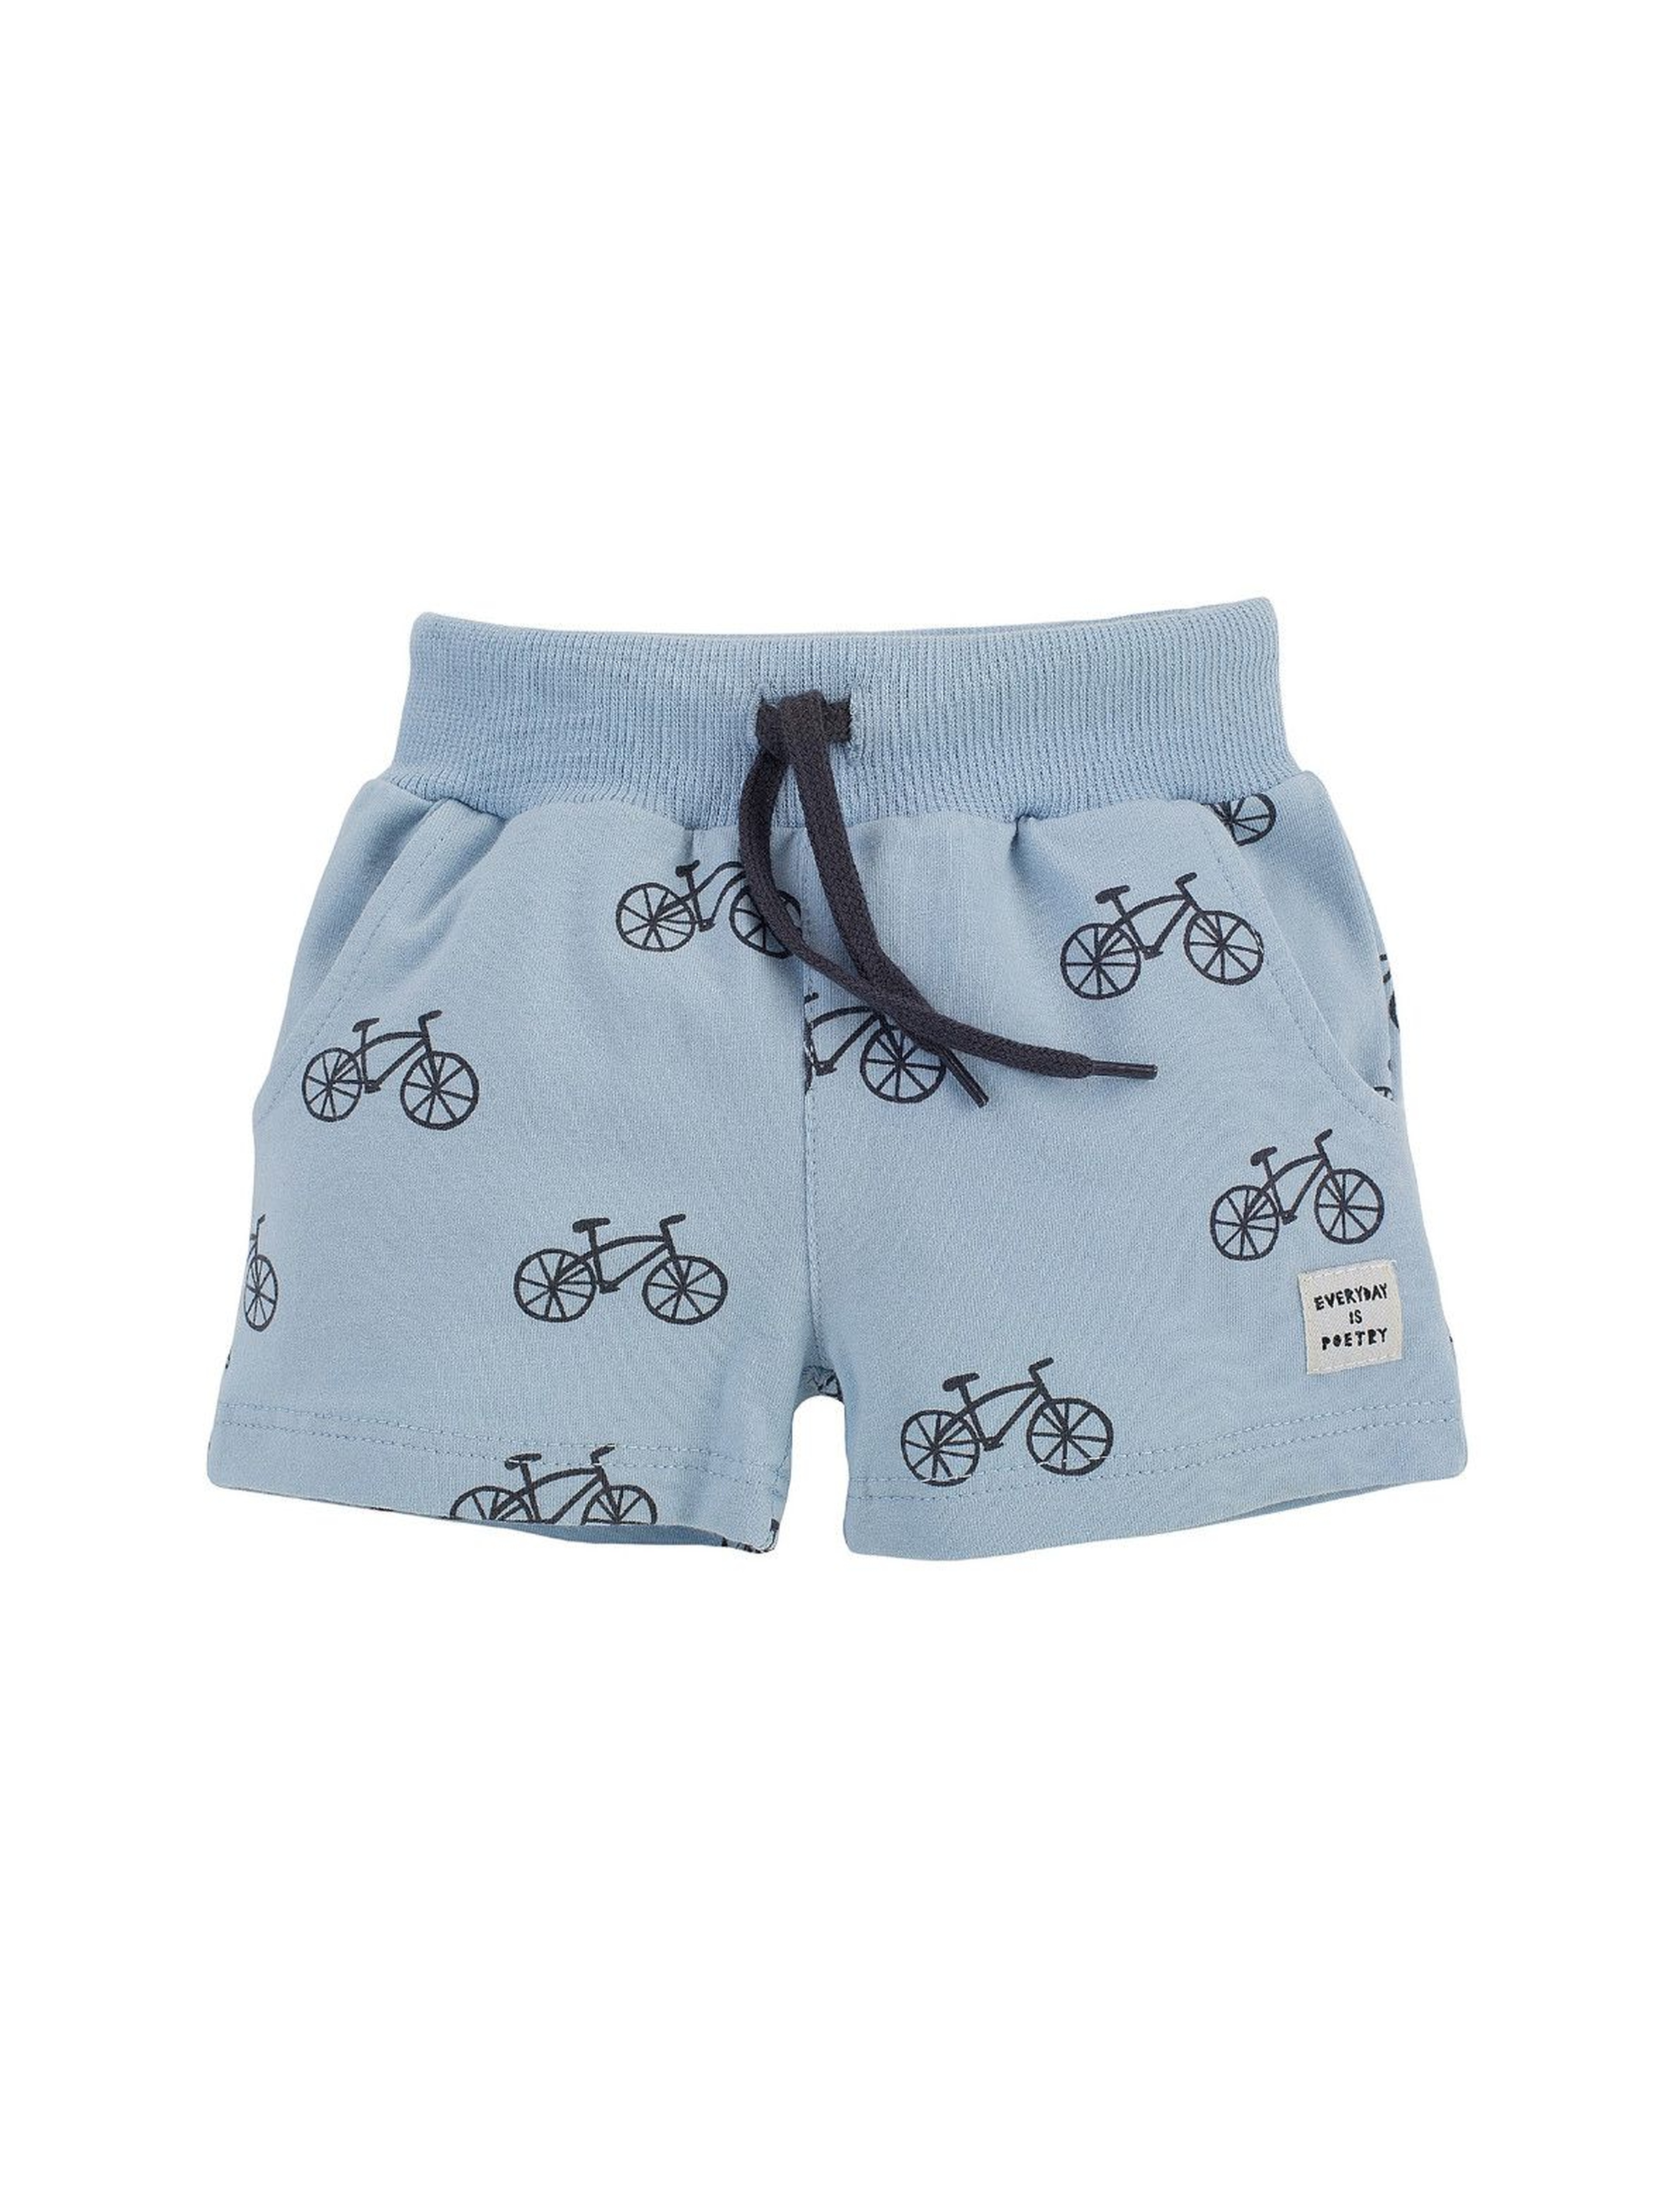 Spodenki krótkie chłopięce w kolorze niebieskim w rowerki